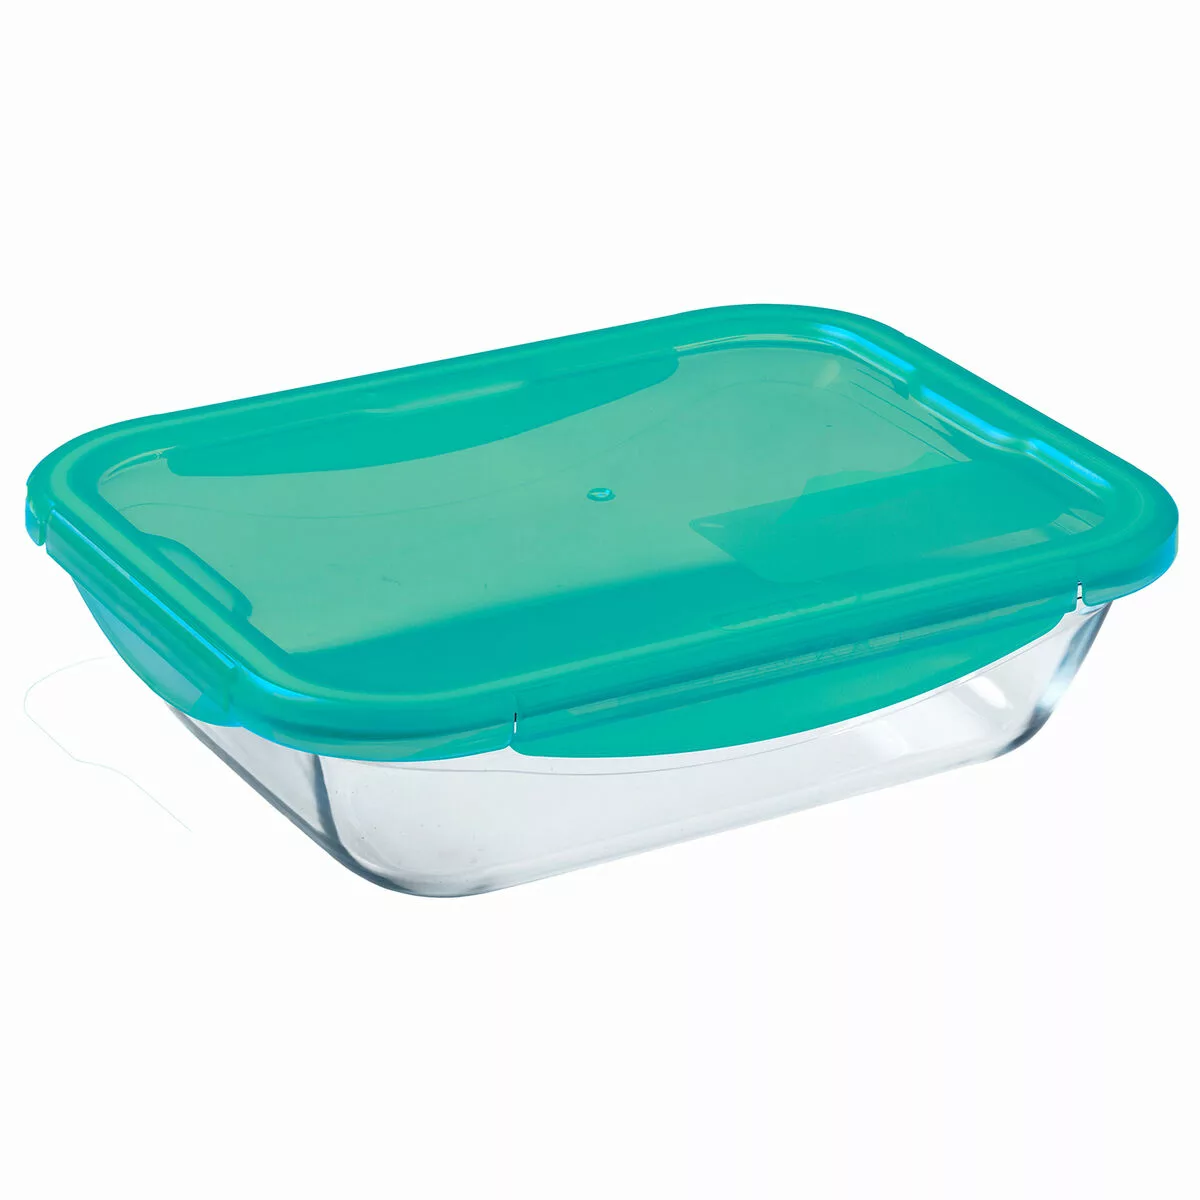 Lunchbox Hermetisch Pyrex Cook & Go Türkis Glas (800 Ml) (6 Stück) günstig online kaufen